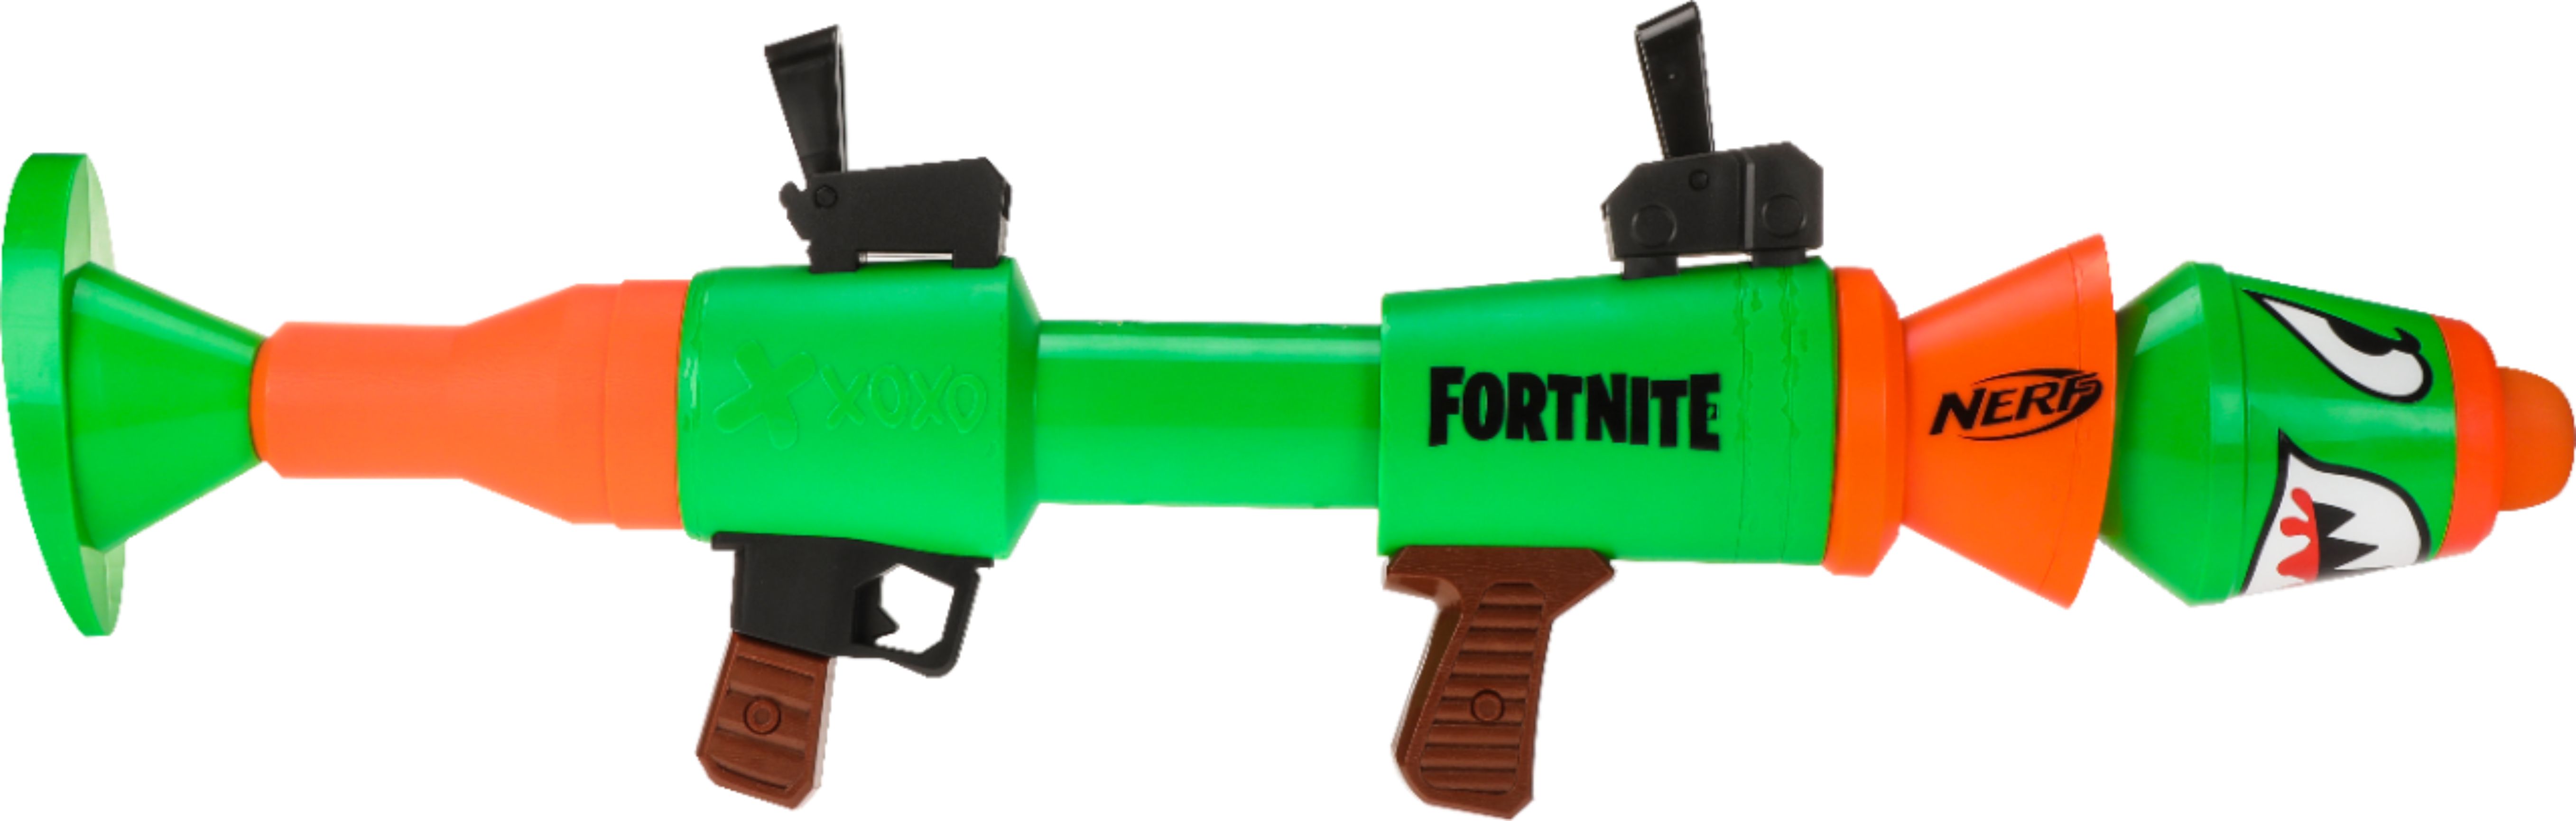 NERF FORTNITE RL ROCKET LAUNCHER Outdoor Shooting Kids Toys Gun Game BRAND NEW! 